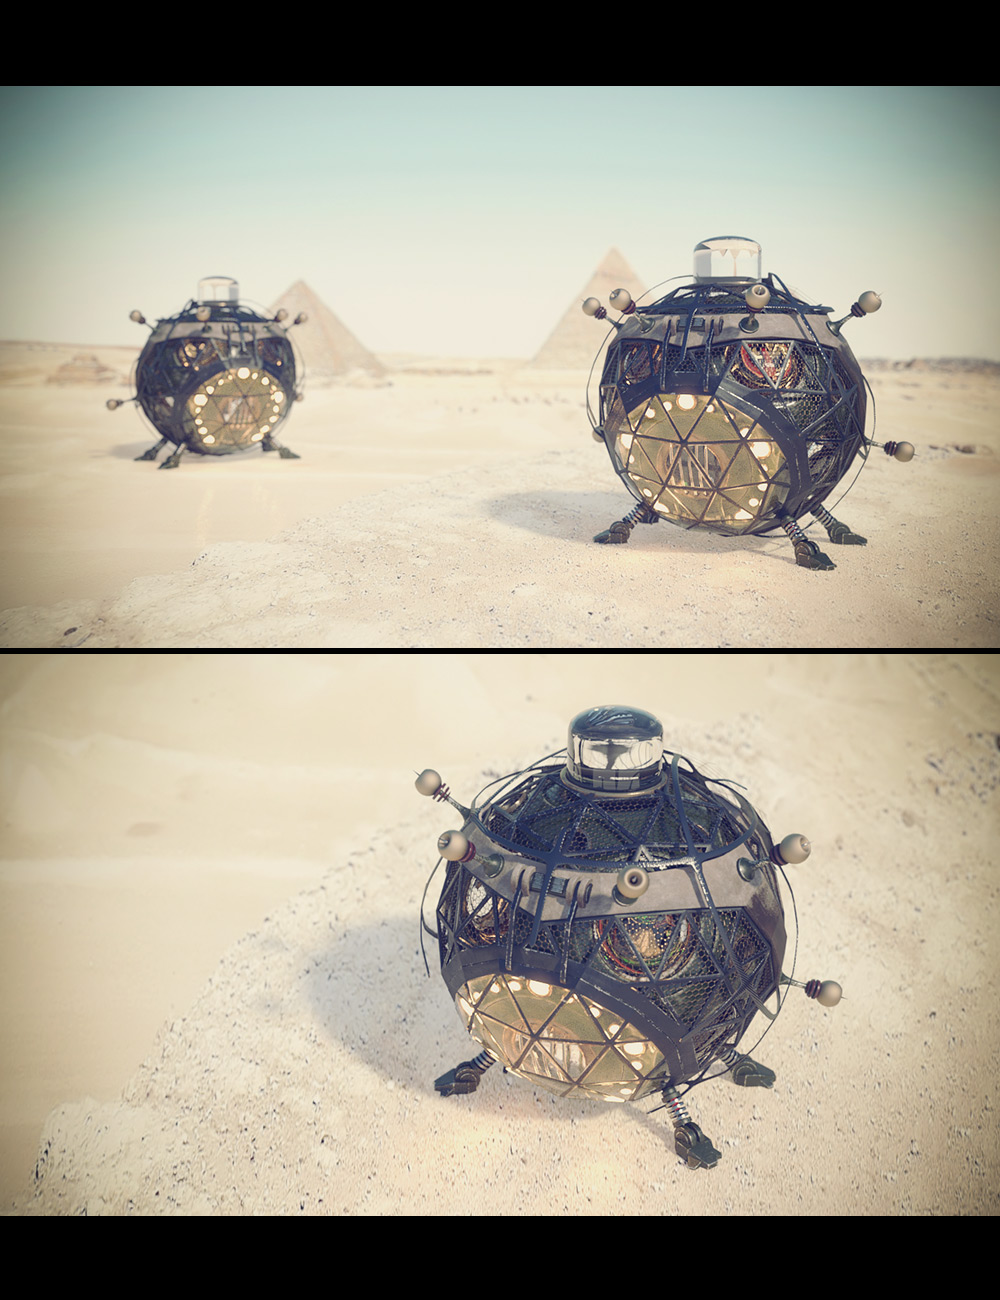 3D Photo Scenes - Desert Heat by: Dreamlight, 3D Models by Daz 3D